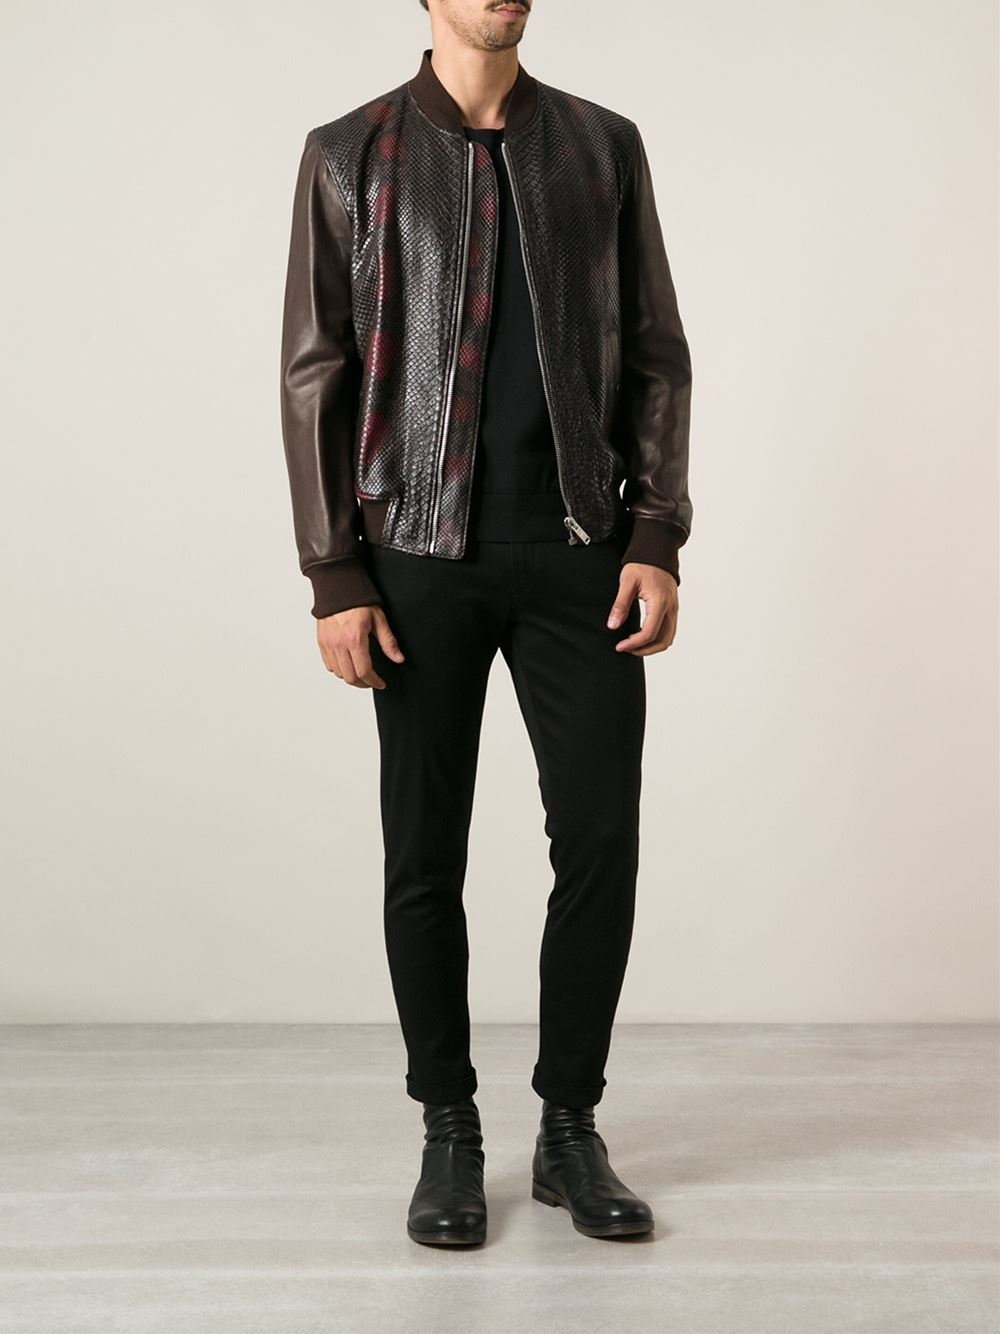 Alexander McQueen Python Skin Jacket in Brown for Men - Lyst